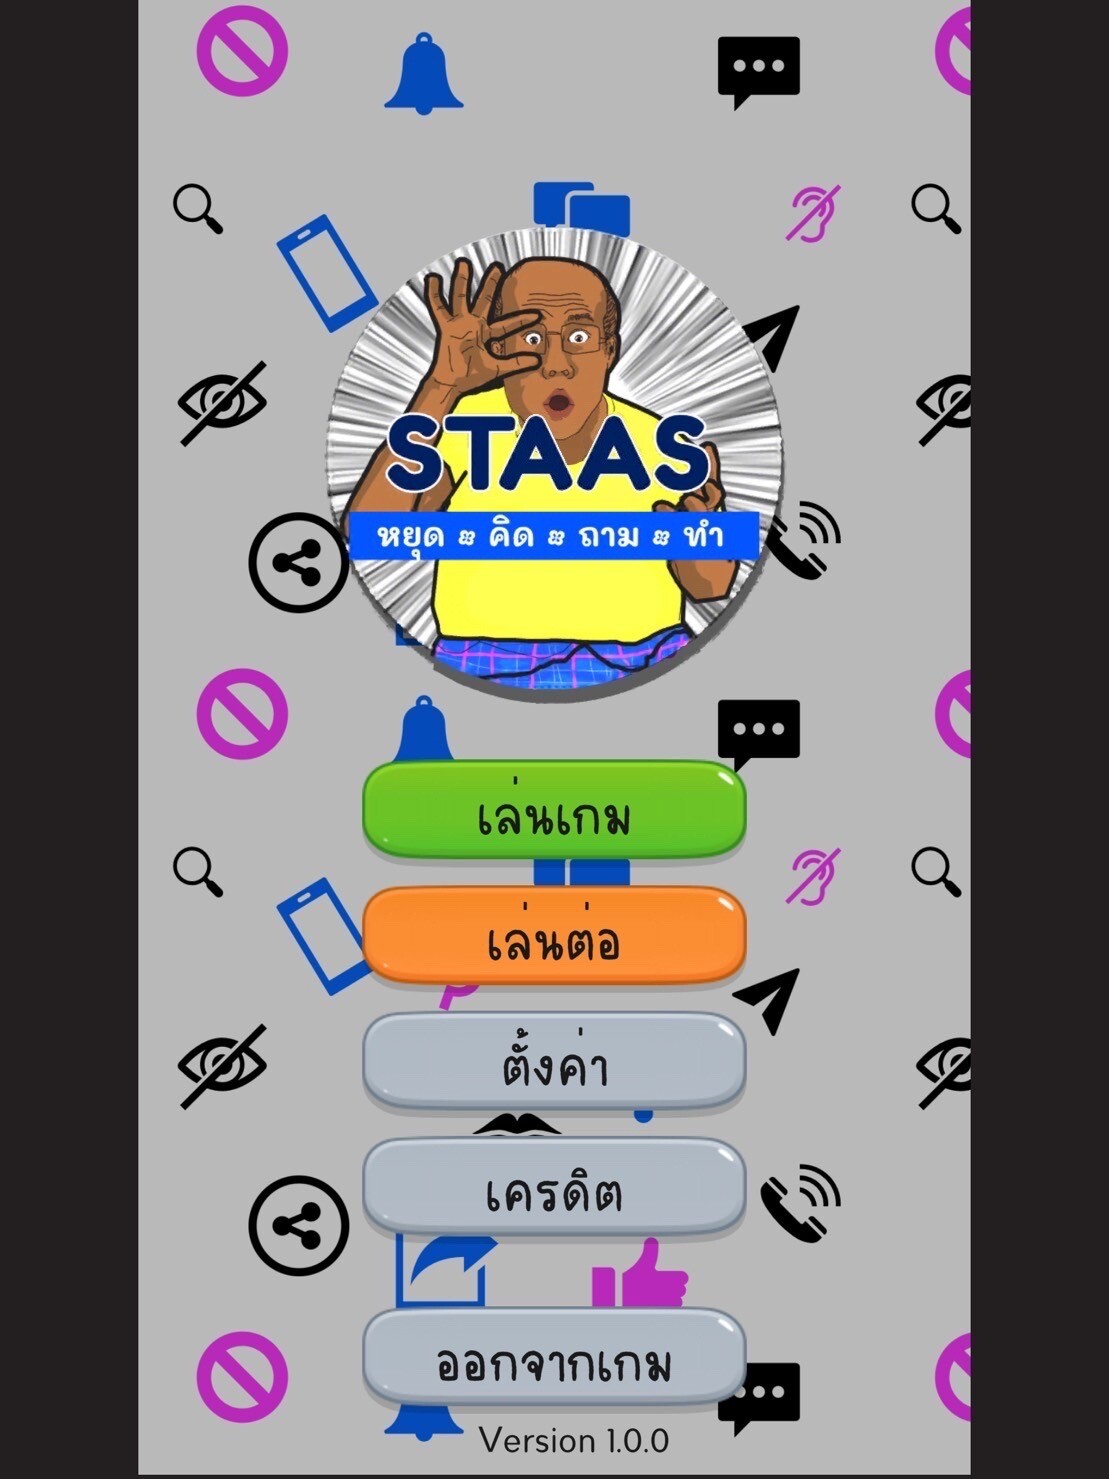 ม.มหิดล ผุด "ศูนย์วิชาการด้านการรู้เท่าทันสื่อของผู้สูงอายุ" ครั้งแรกในประเทศไทย พร้อมคิดเกมออนไลน์"สต๊าซ STAAS หยุด-คิด-ถาม-ทำ" เพื่อผู้สูงวัยรู้ทันสื่อ โหลดฟรีได้แล้ววันนี้